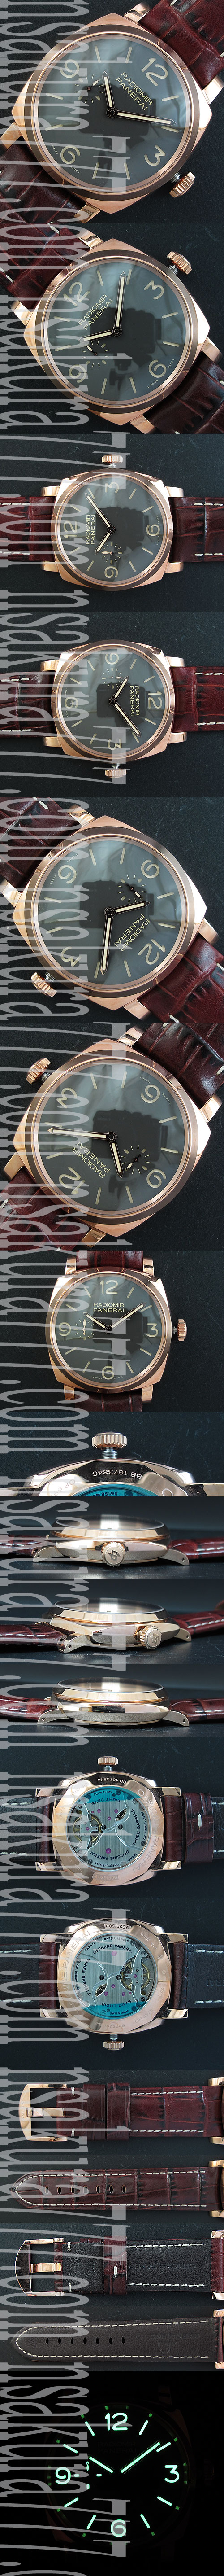 パネライ   PAM513 メンズスーパーコピー腕時計おすすめ 【手巻き】